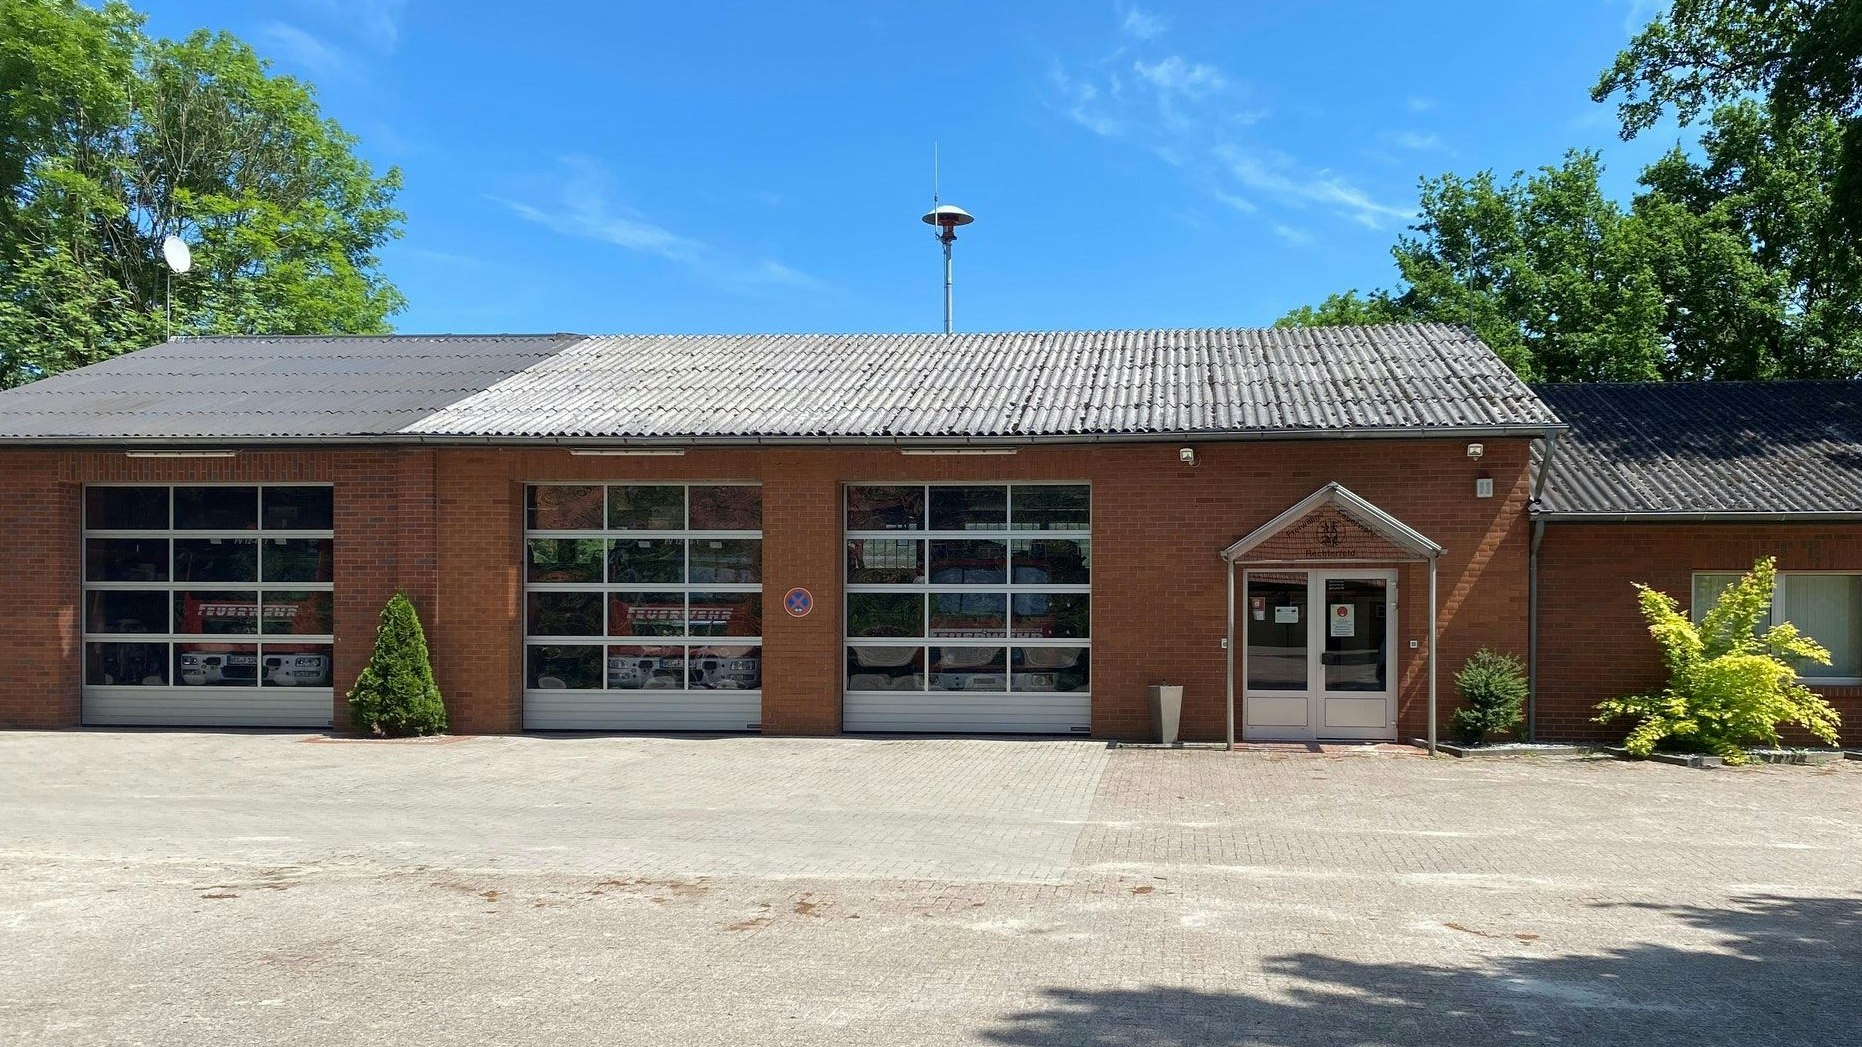 Der aktuelle Standort der Feuerwehr Rechterfeld: Das Gebäude wurde 1979 erbaut. Foto: Reinke/Feuerwehr Rechterfeld